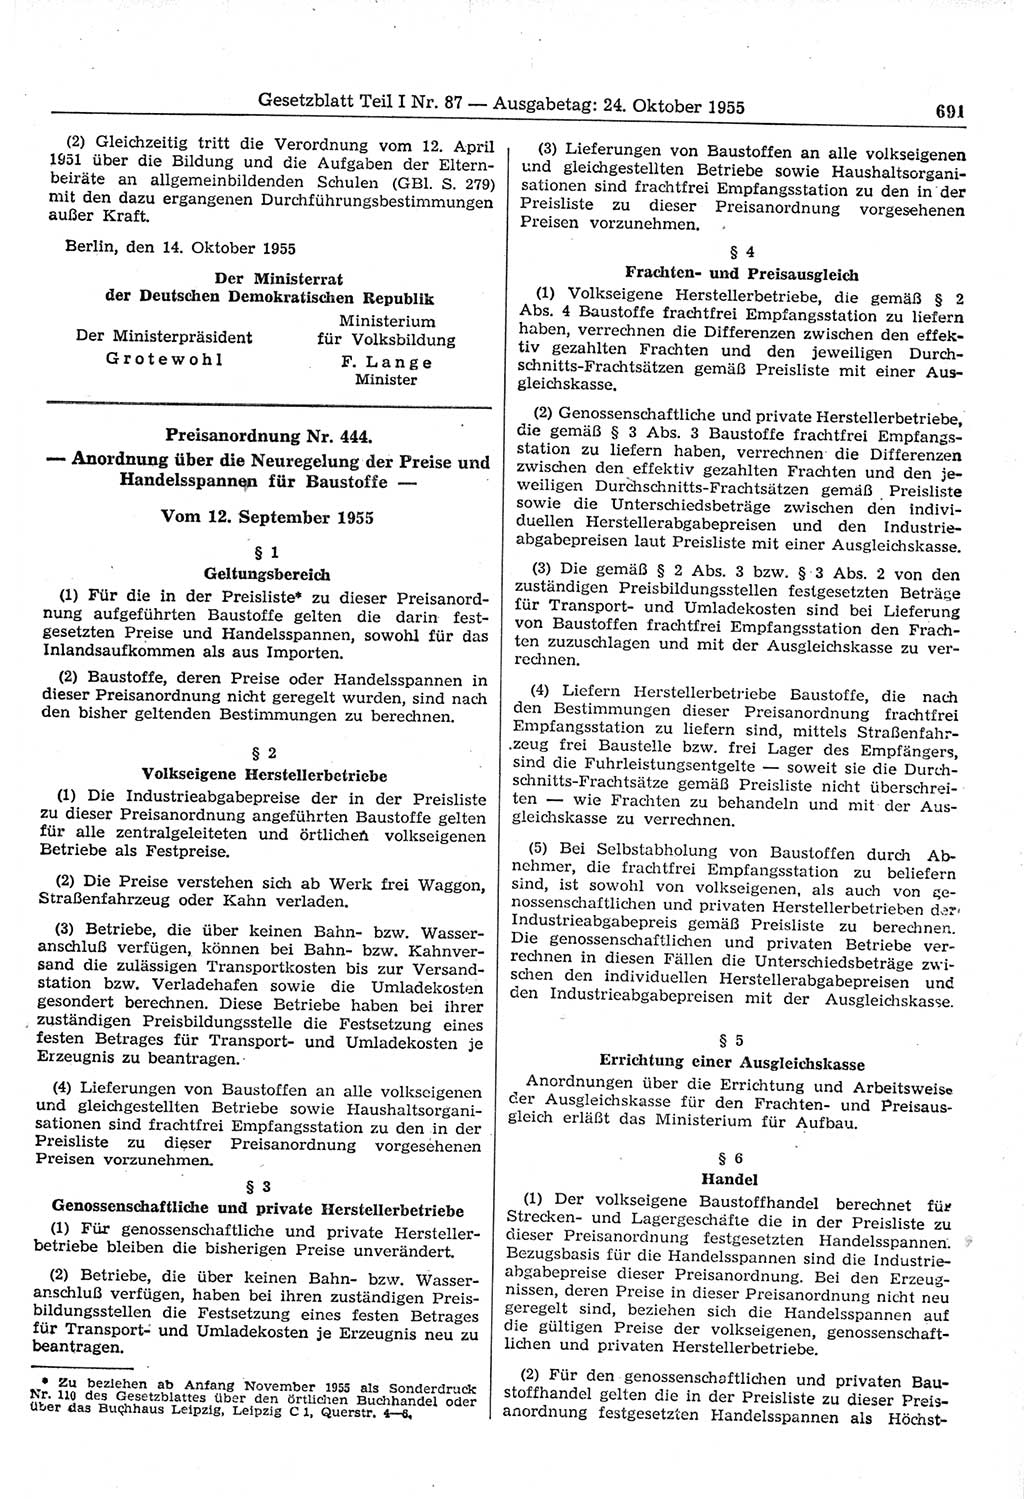 Gesetzblatt (GBl.) der Deutschen Demokratischen Republik (DDR) Teil Ⅰ 1955, Seite 691 (GBl. DDR Ⅰ 1955, S. 691)